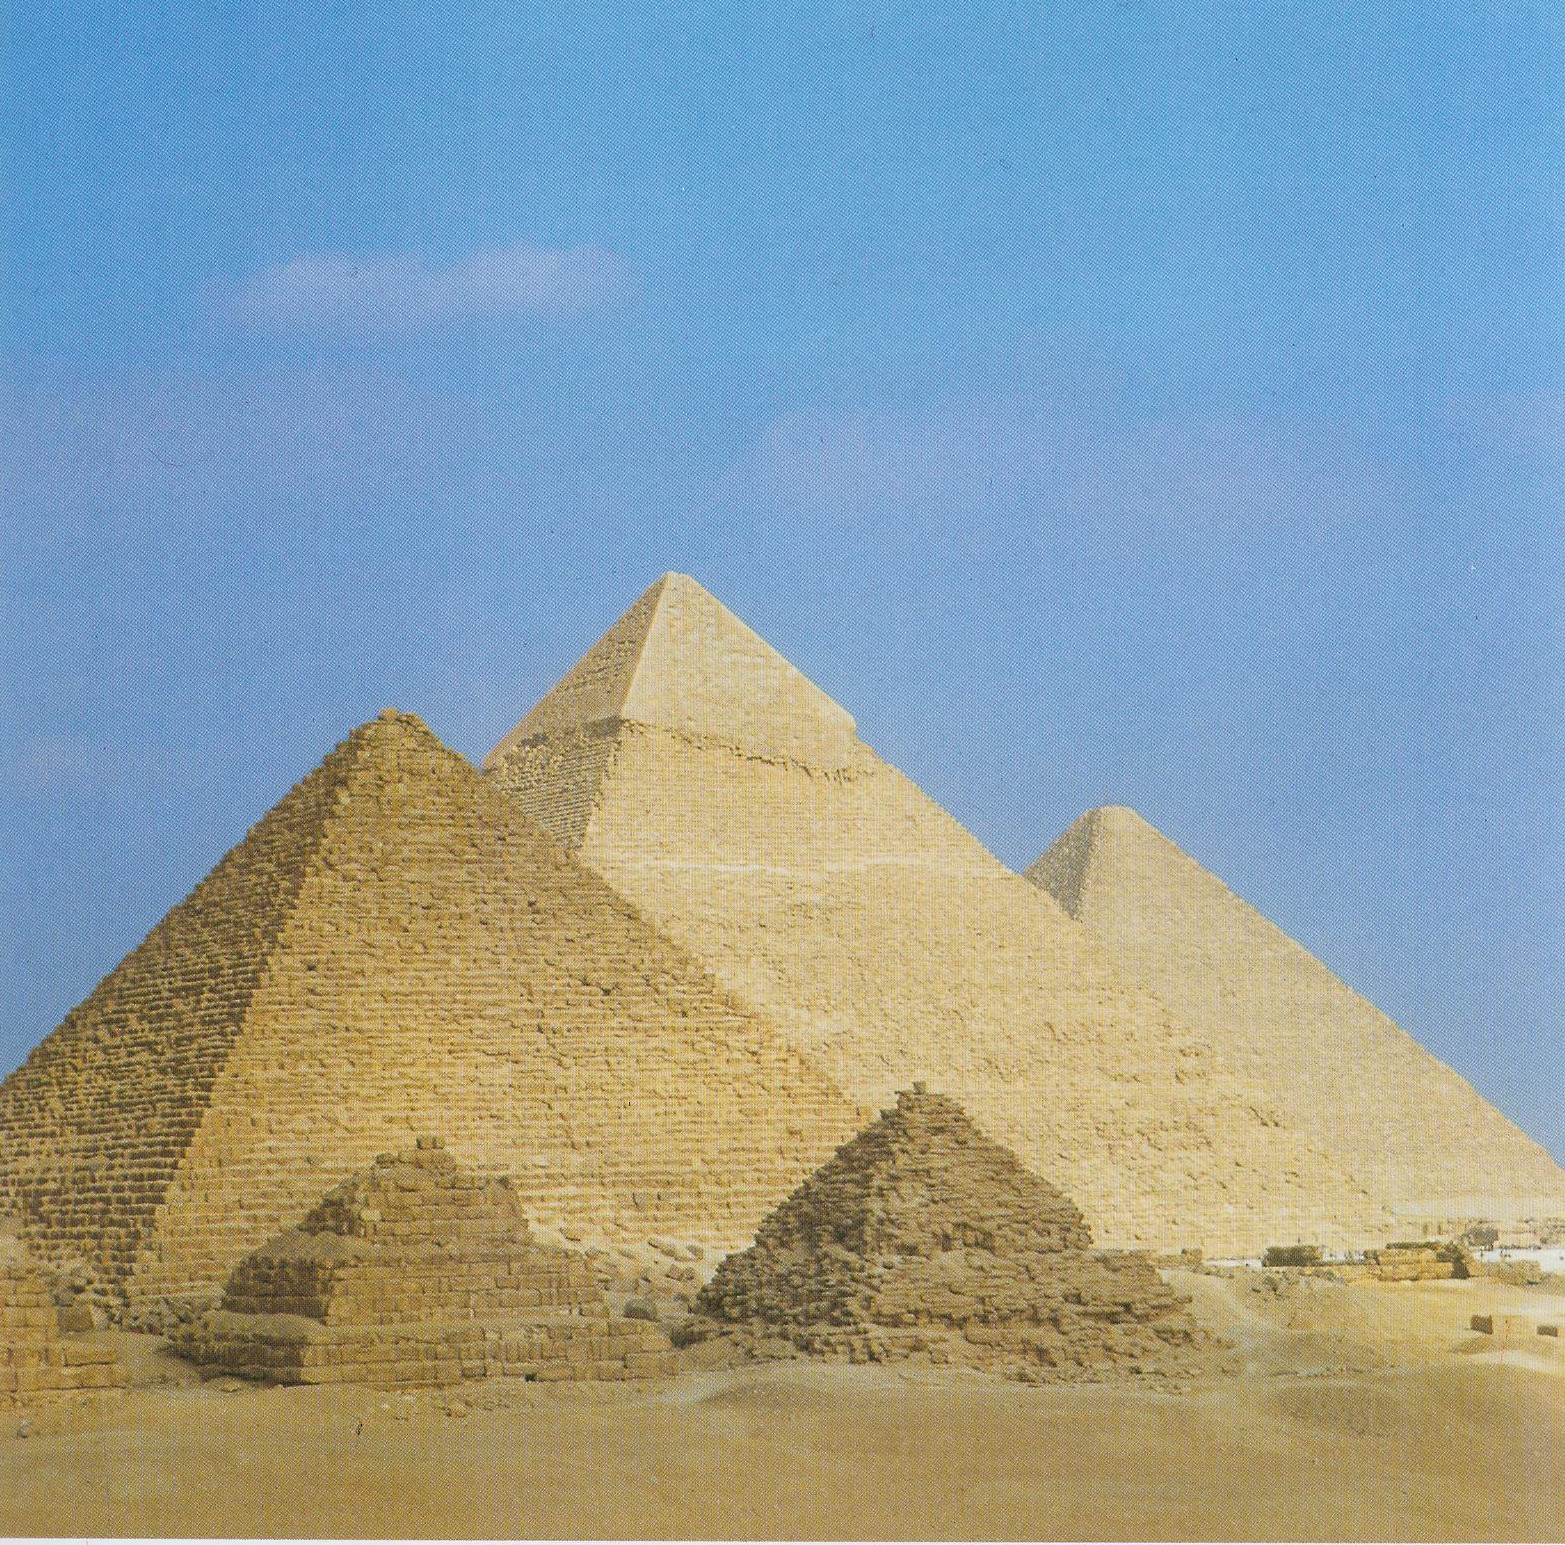 Формы пирамид в древнем египте. Пирамида Хефрена древний Египет. Пирамида Хефрена пирамиды Гизы. Пирамида Хеопса древний Египет. Великие пирамиды Гизы Египет Хуфу.